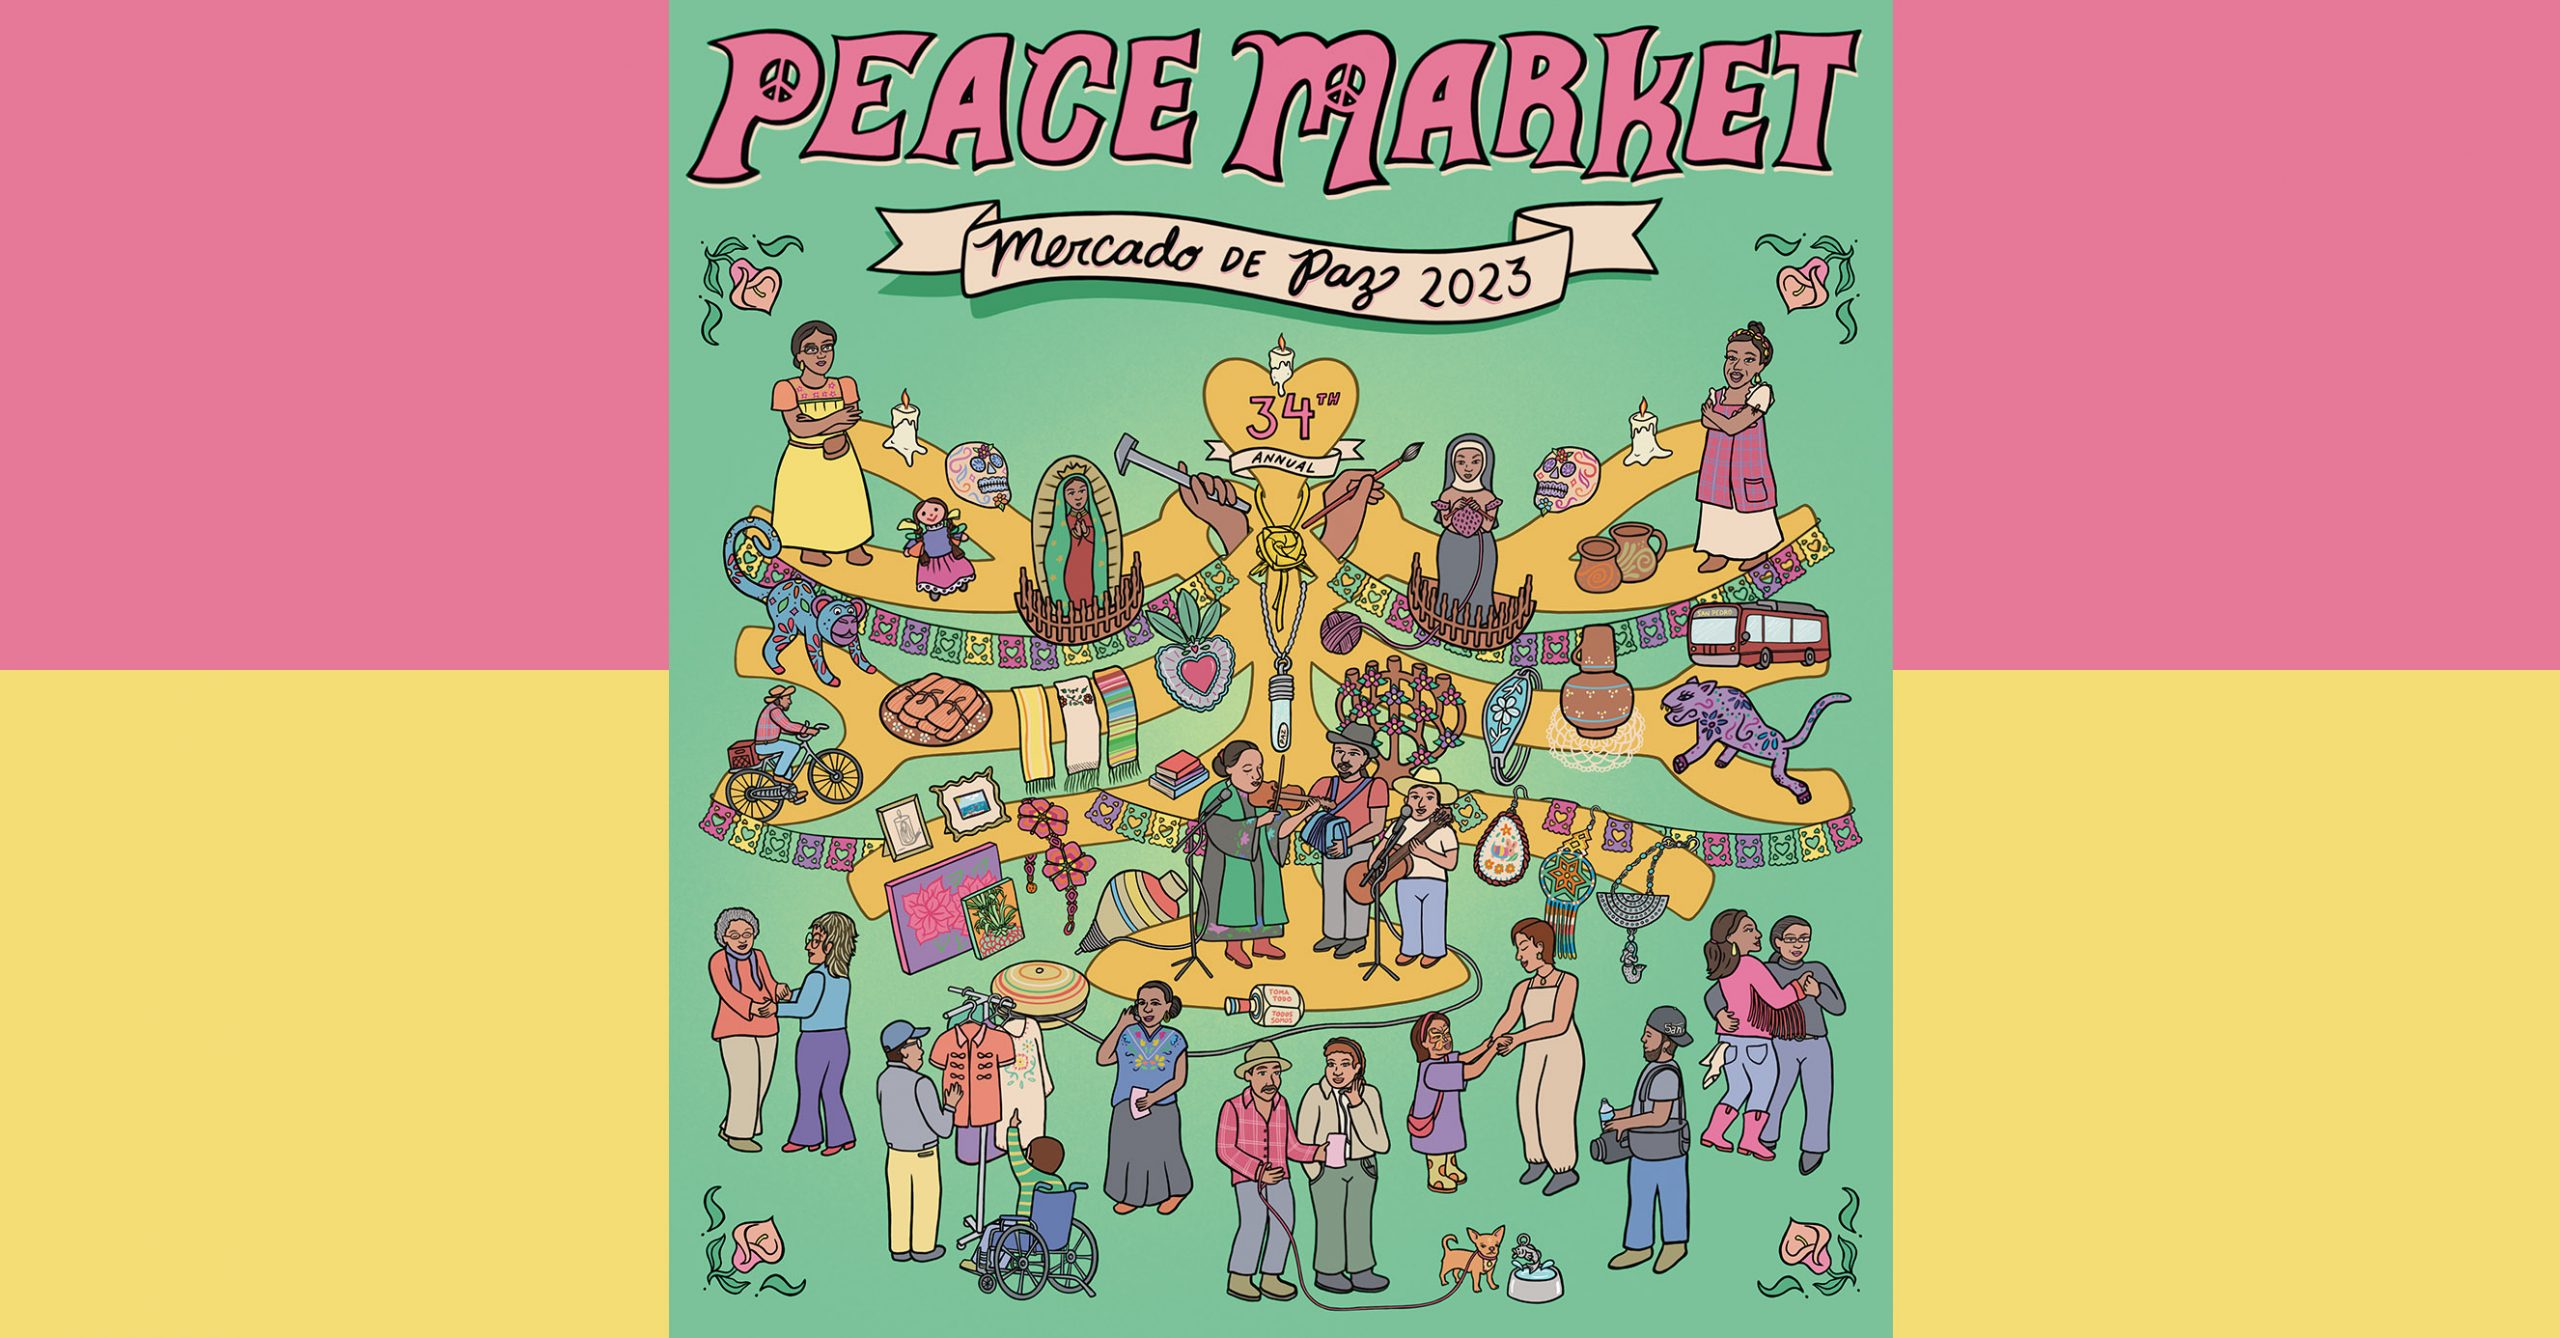 Peace Market 2023